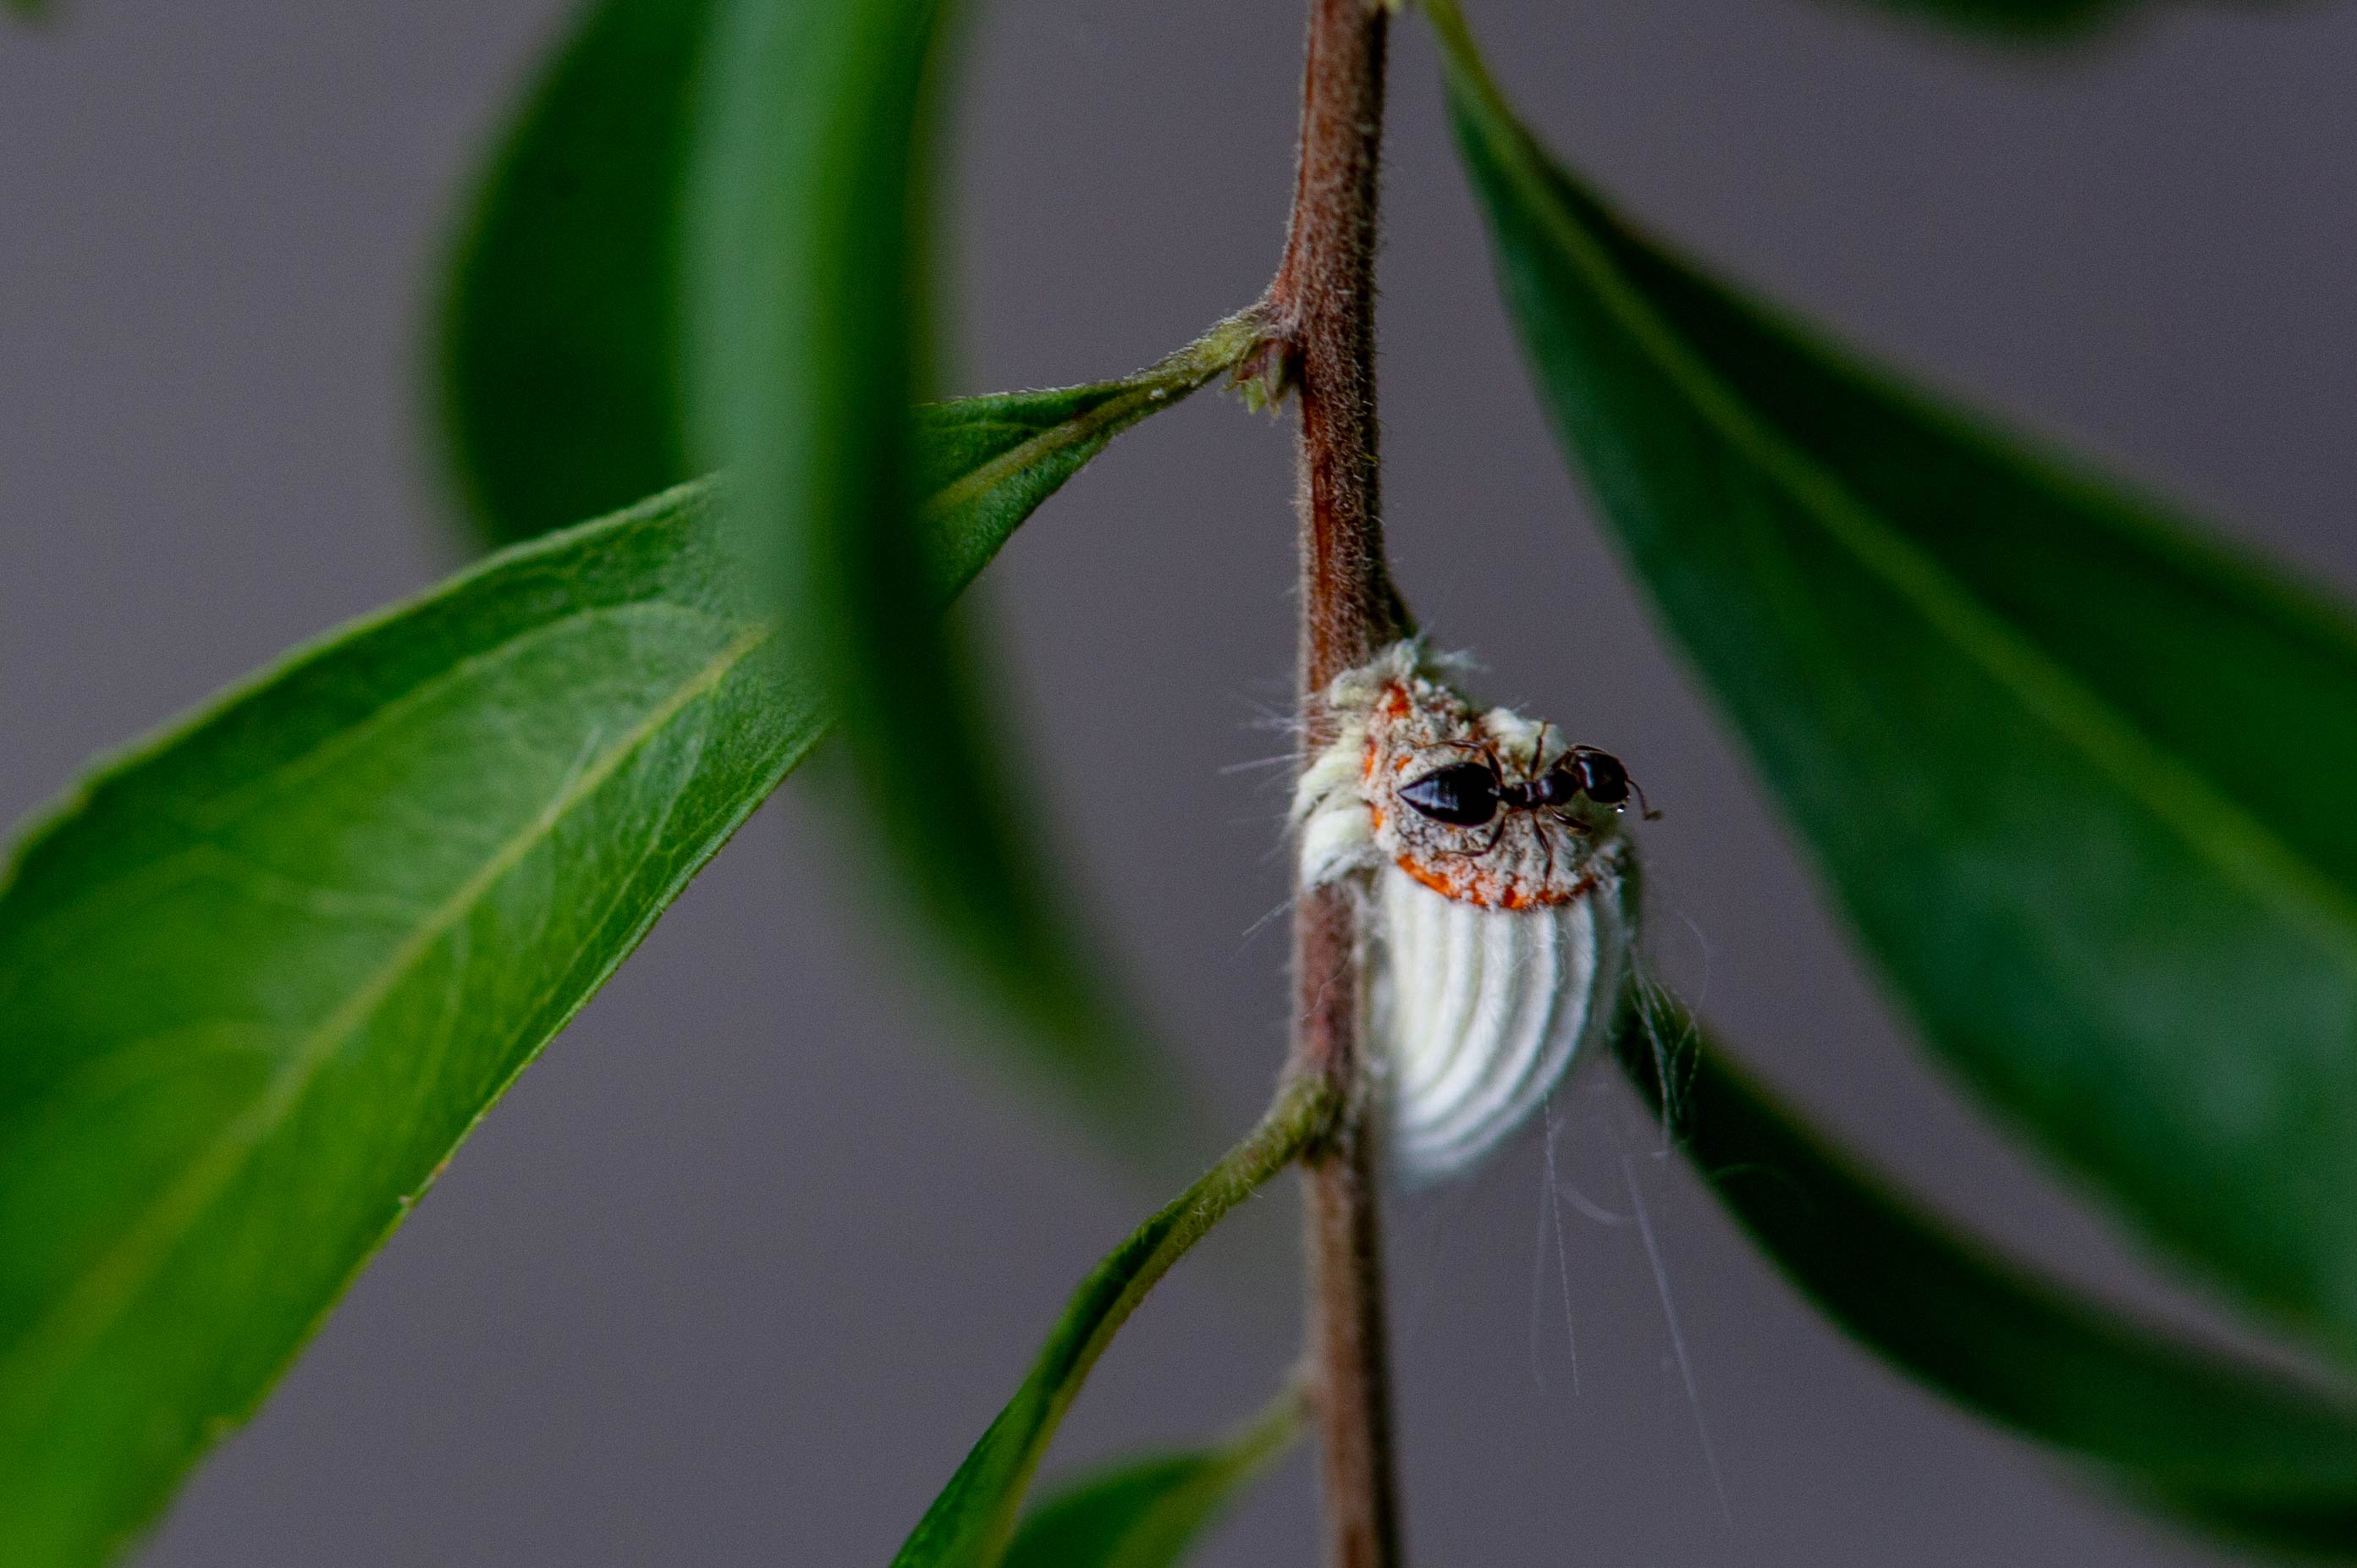 イセリアカイガラムシ ワタフキカイガラムシ 虫の写真と生態なら昆虫写真図鑑 ムシミル